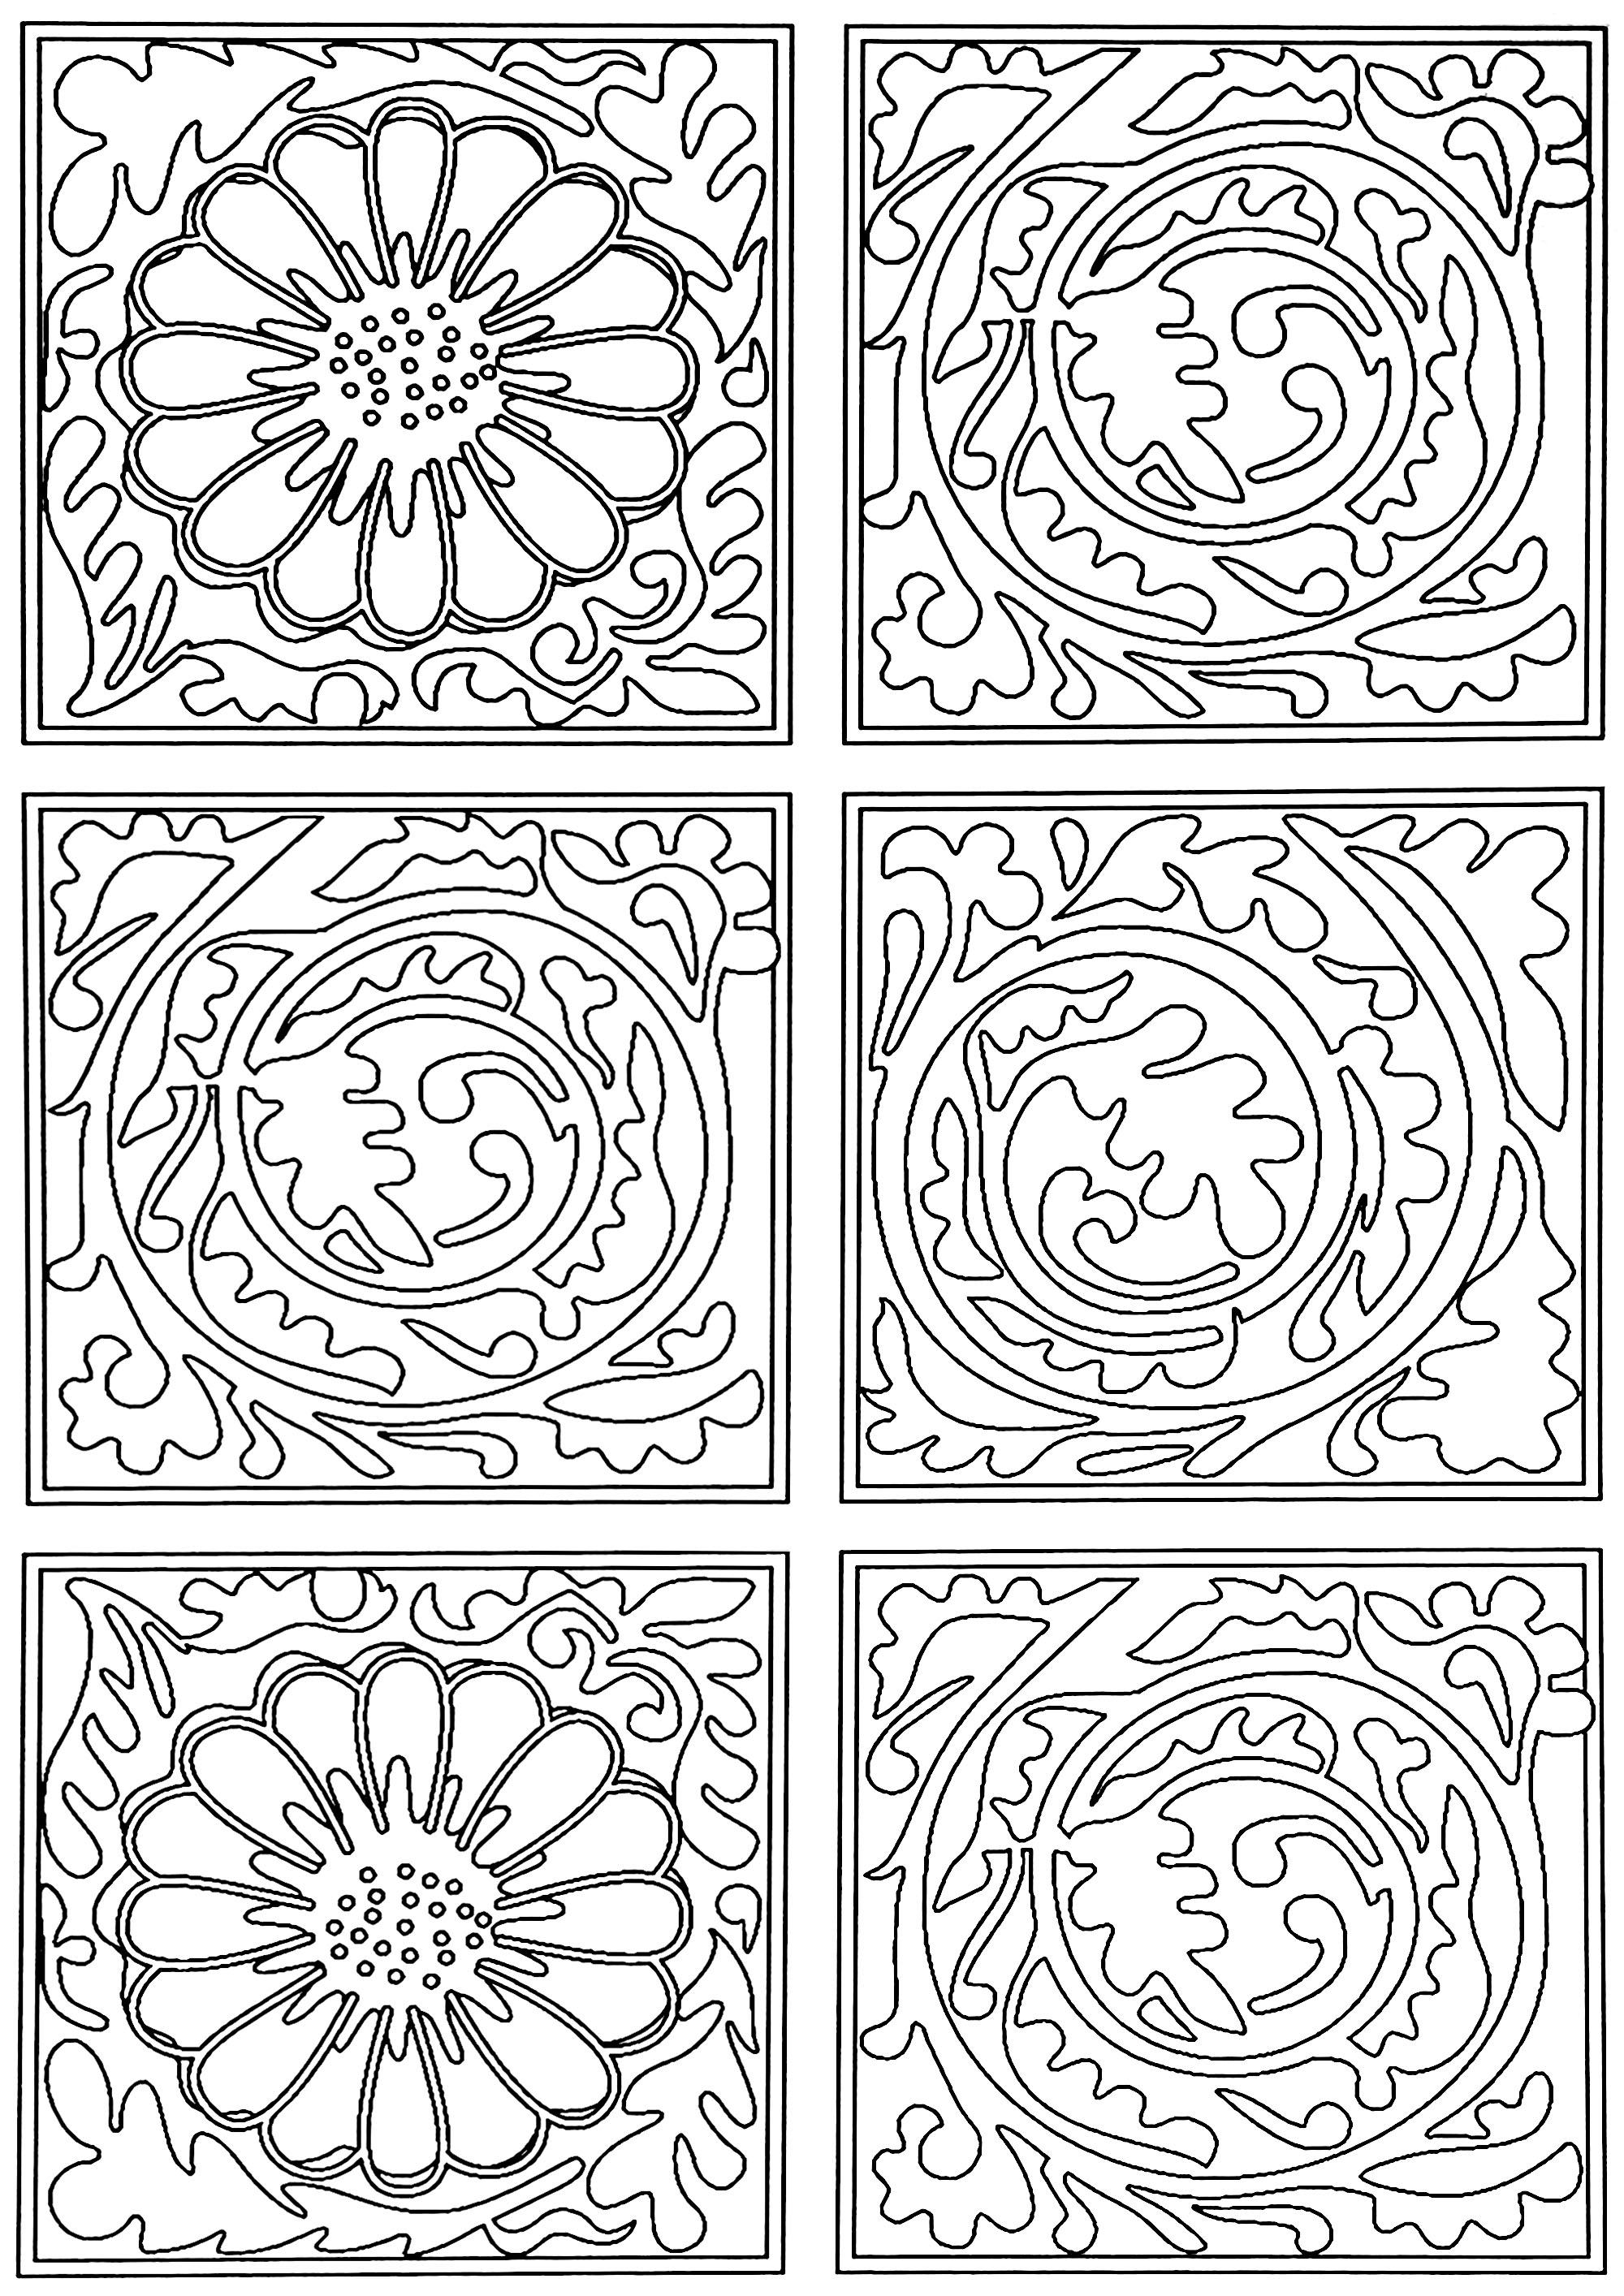 Página para colorir criada a partir do padrão de papel de parede criado por William Morris: 'Diaper' em 1870. Este motivo é composto por quadrados com enrolamentos de folhas, intercalados por quadrados com flores